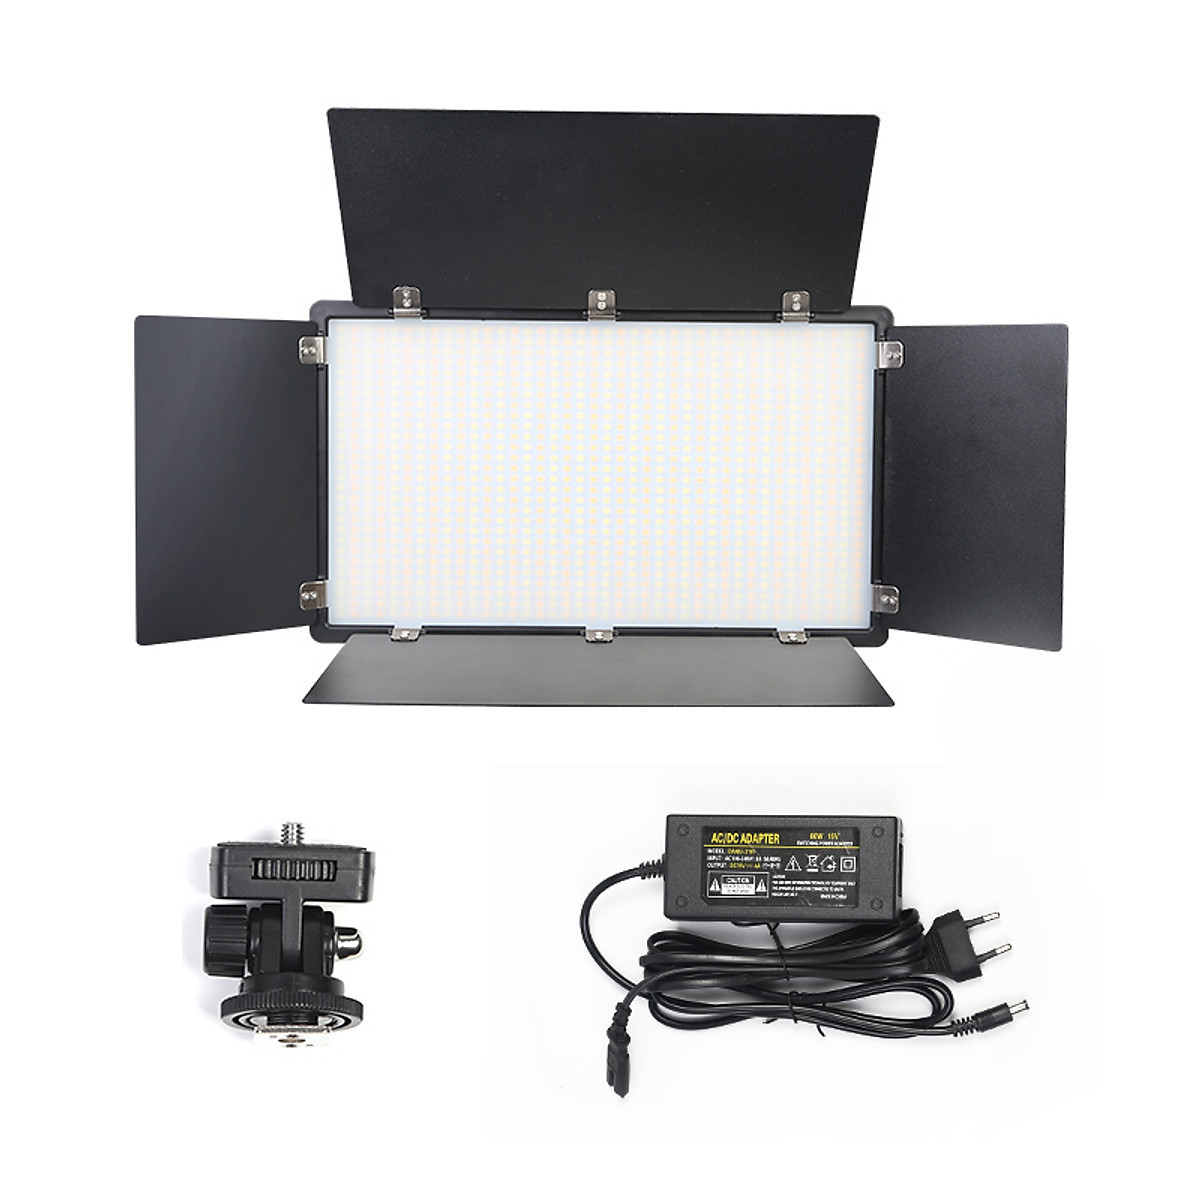 Đèn studio LED U800+ Hỗ trợ studio chụp ảnh, quay phim, livestream - Kèm chân đèn 2m1- Có sẵn 2 viên pin